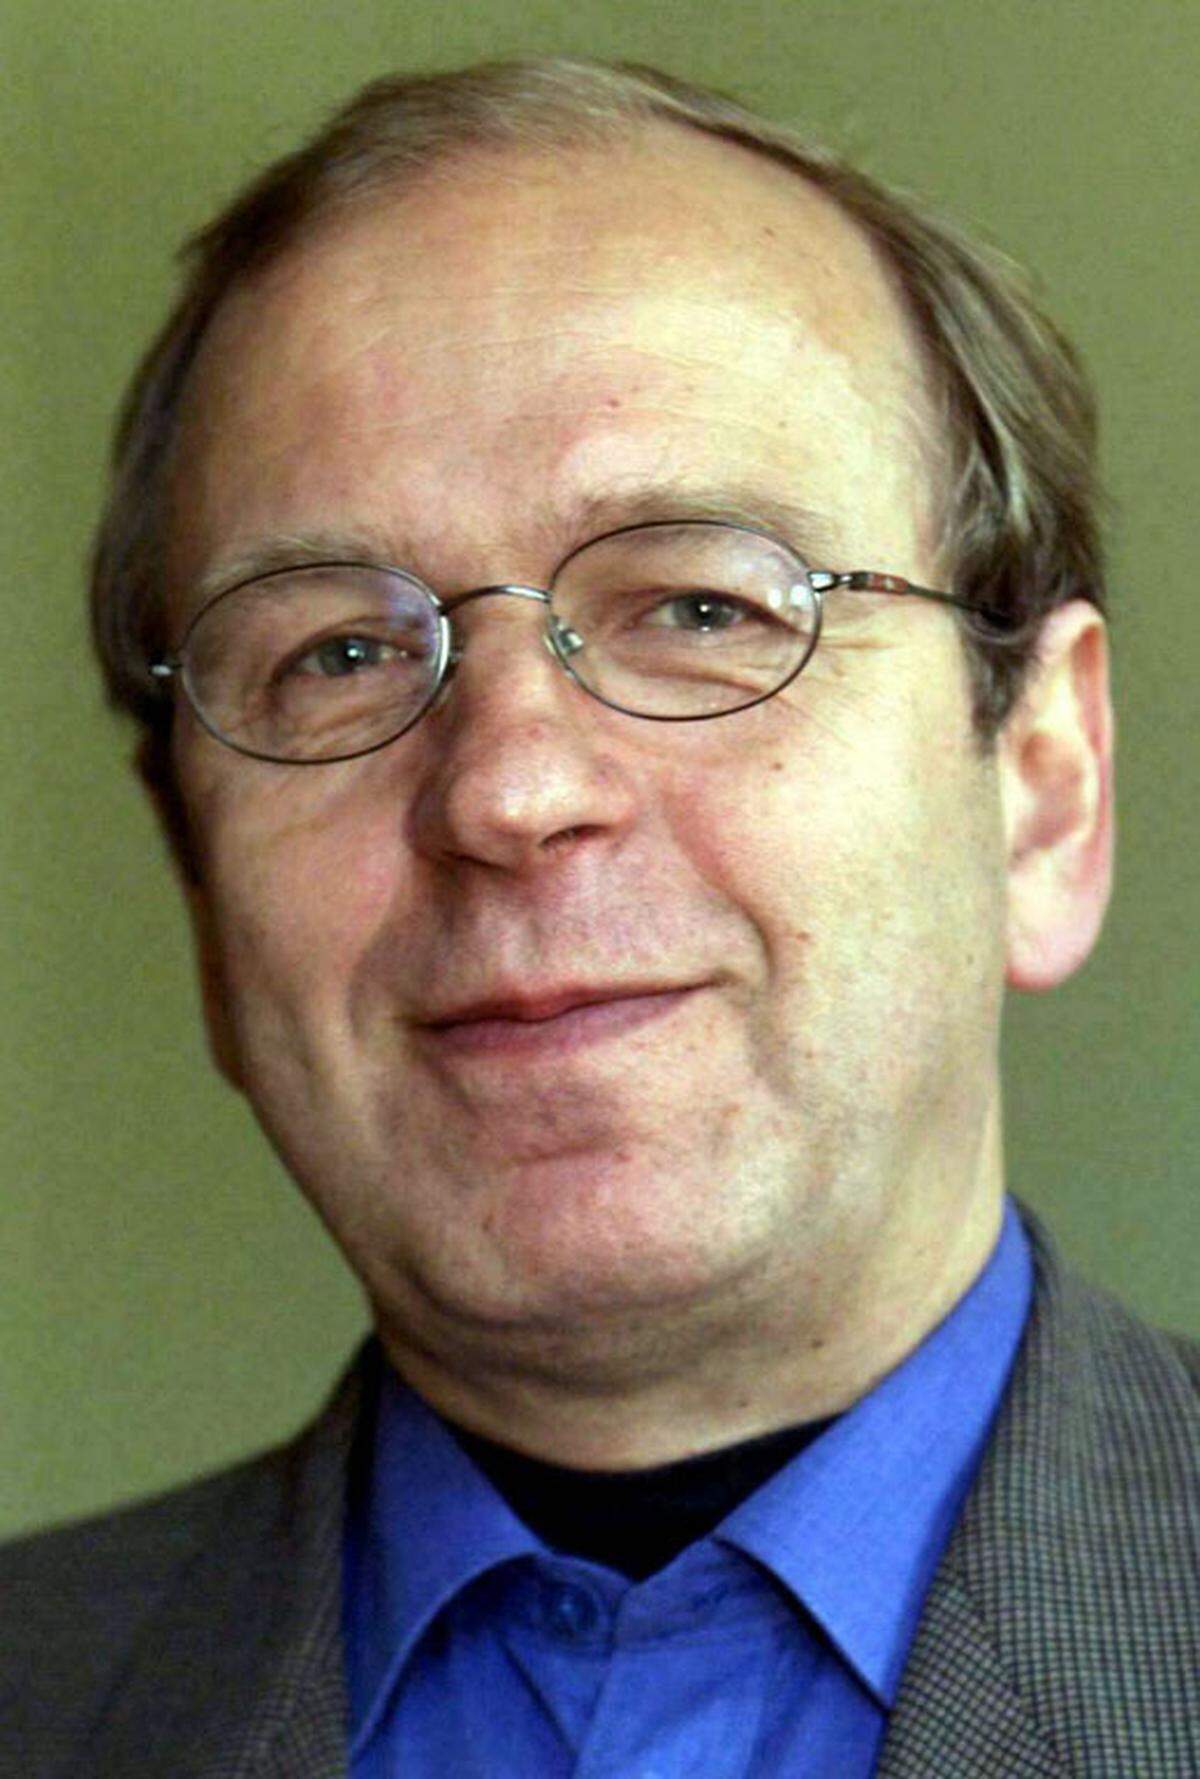 Erkki Liikanen ist seit 2006 Chef der finnischen Zentralbank. Er gilt als Vertreter eines pragmatischen währungspolitischen Kurses. Doch weil mit Olli Rehn ein Finne Wirtschafts- und Währungskommissar ist, könnte auch Liikanen bei der Kandidatur als EZB-Chef scheitern.